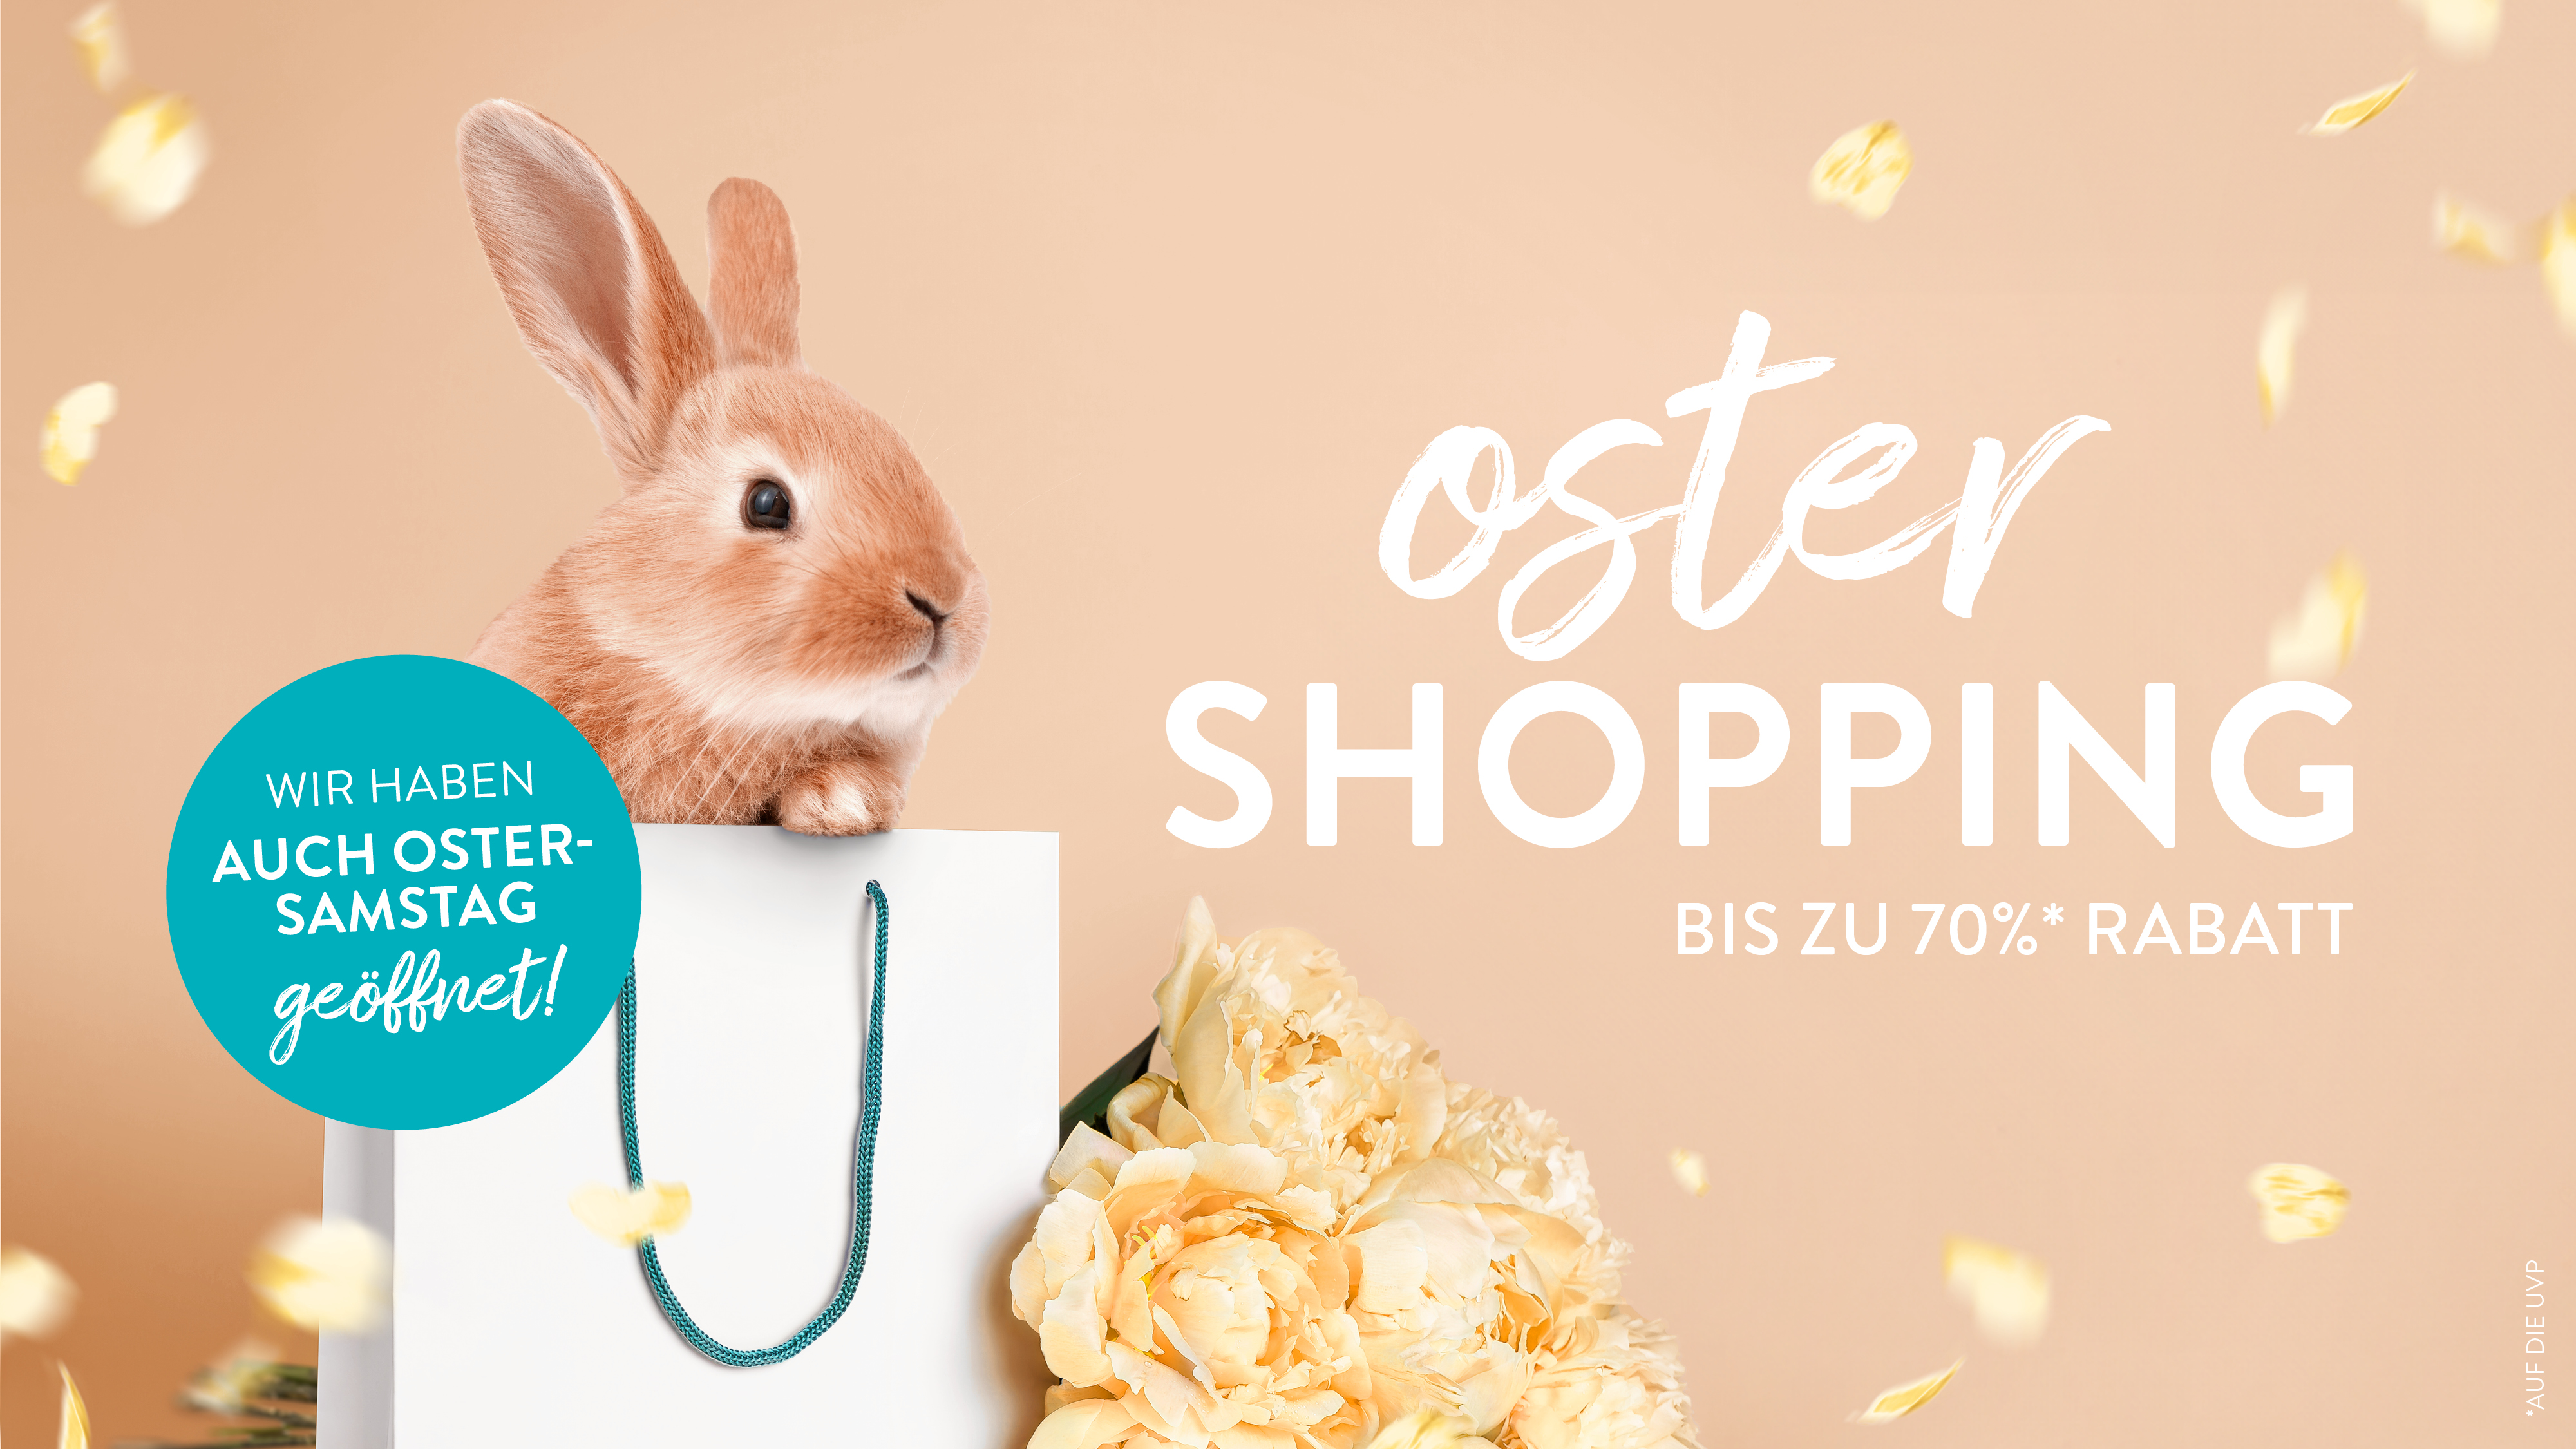 Oster Shopping - Bis zu 70% Rabatt